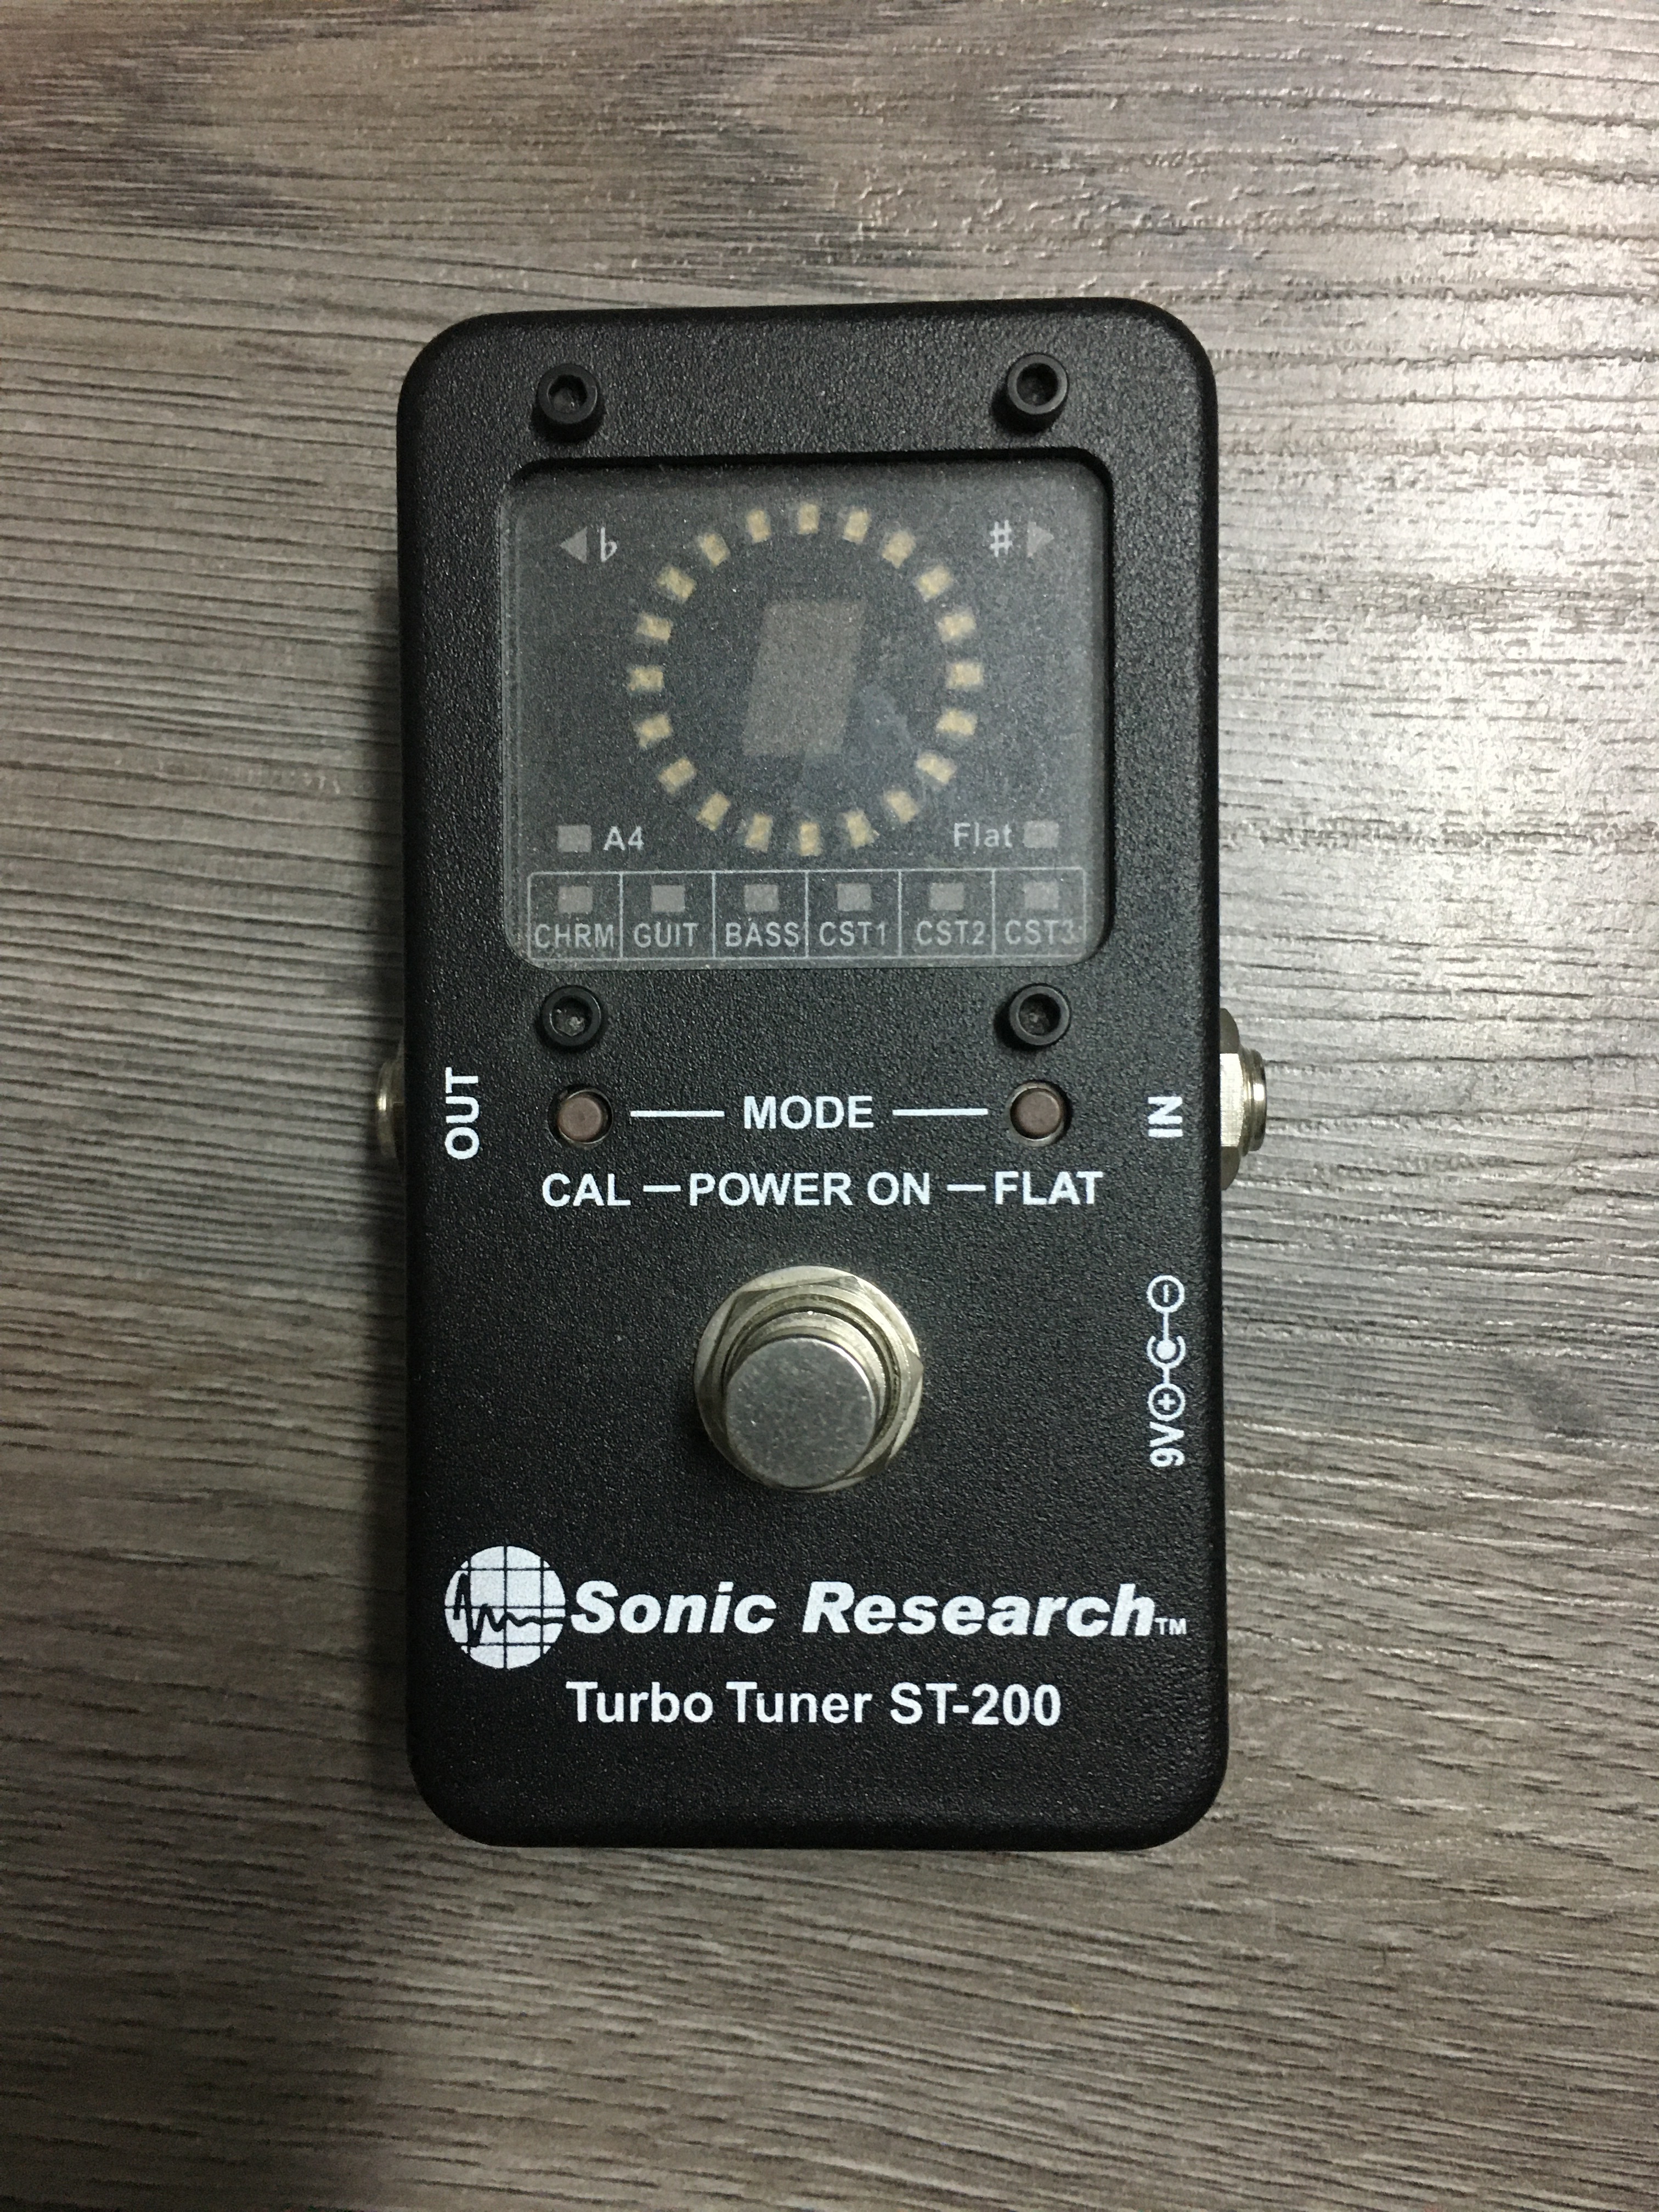 Sonic Research Turbo Tuner ST-200視認性がよく反応が早い